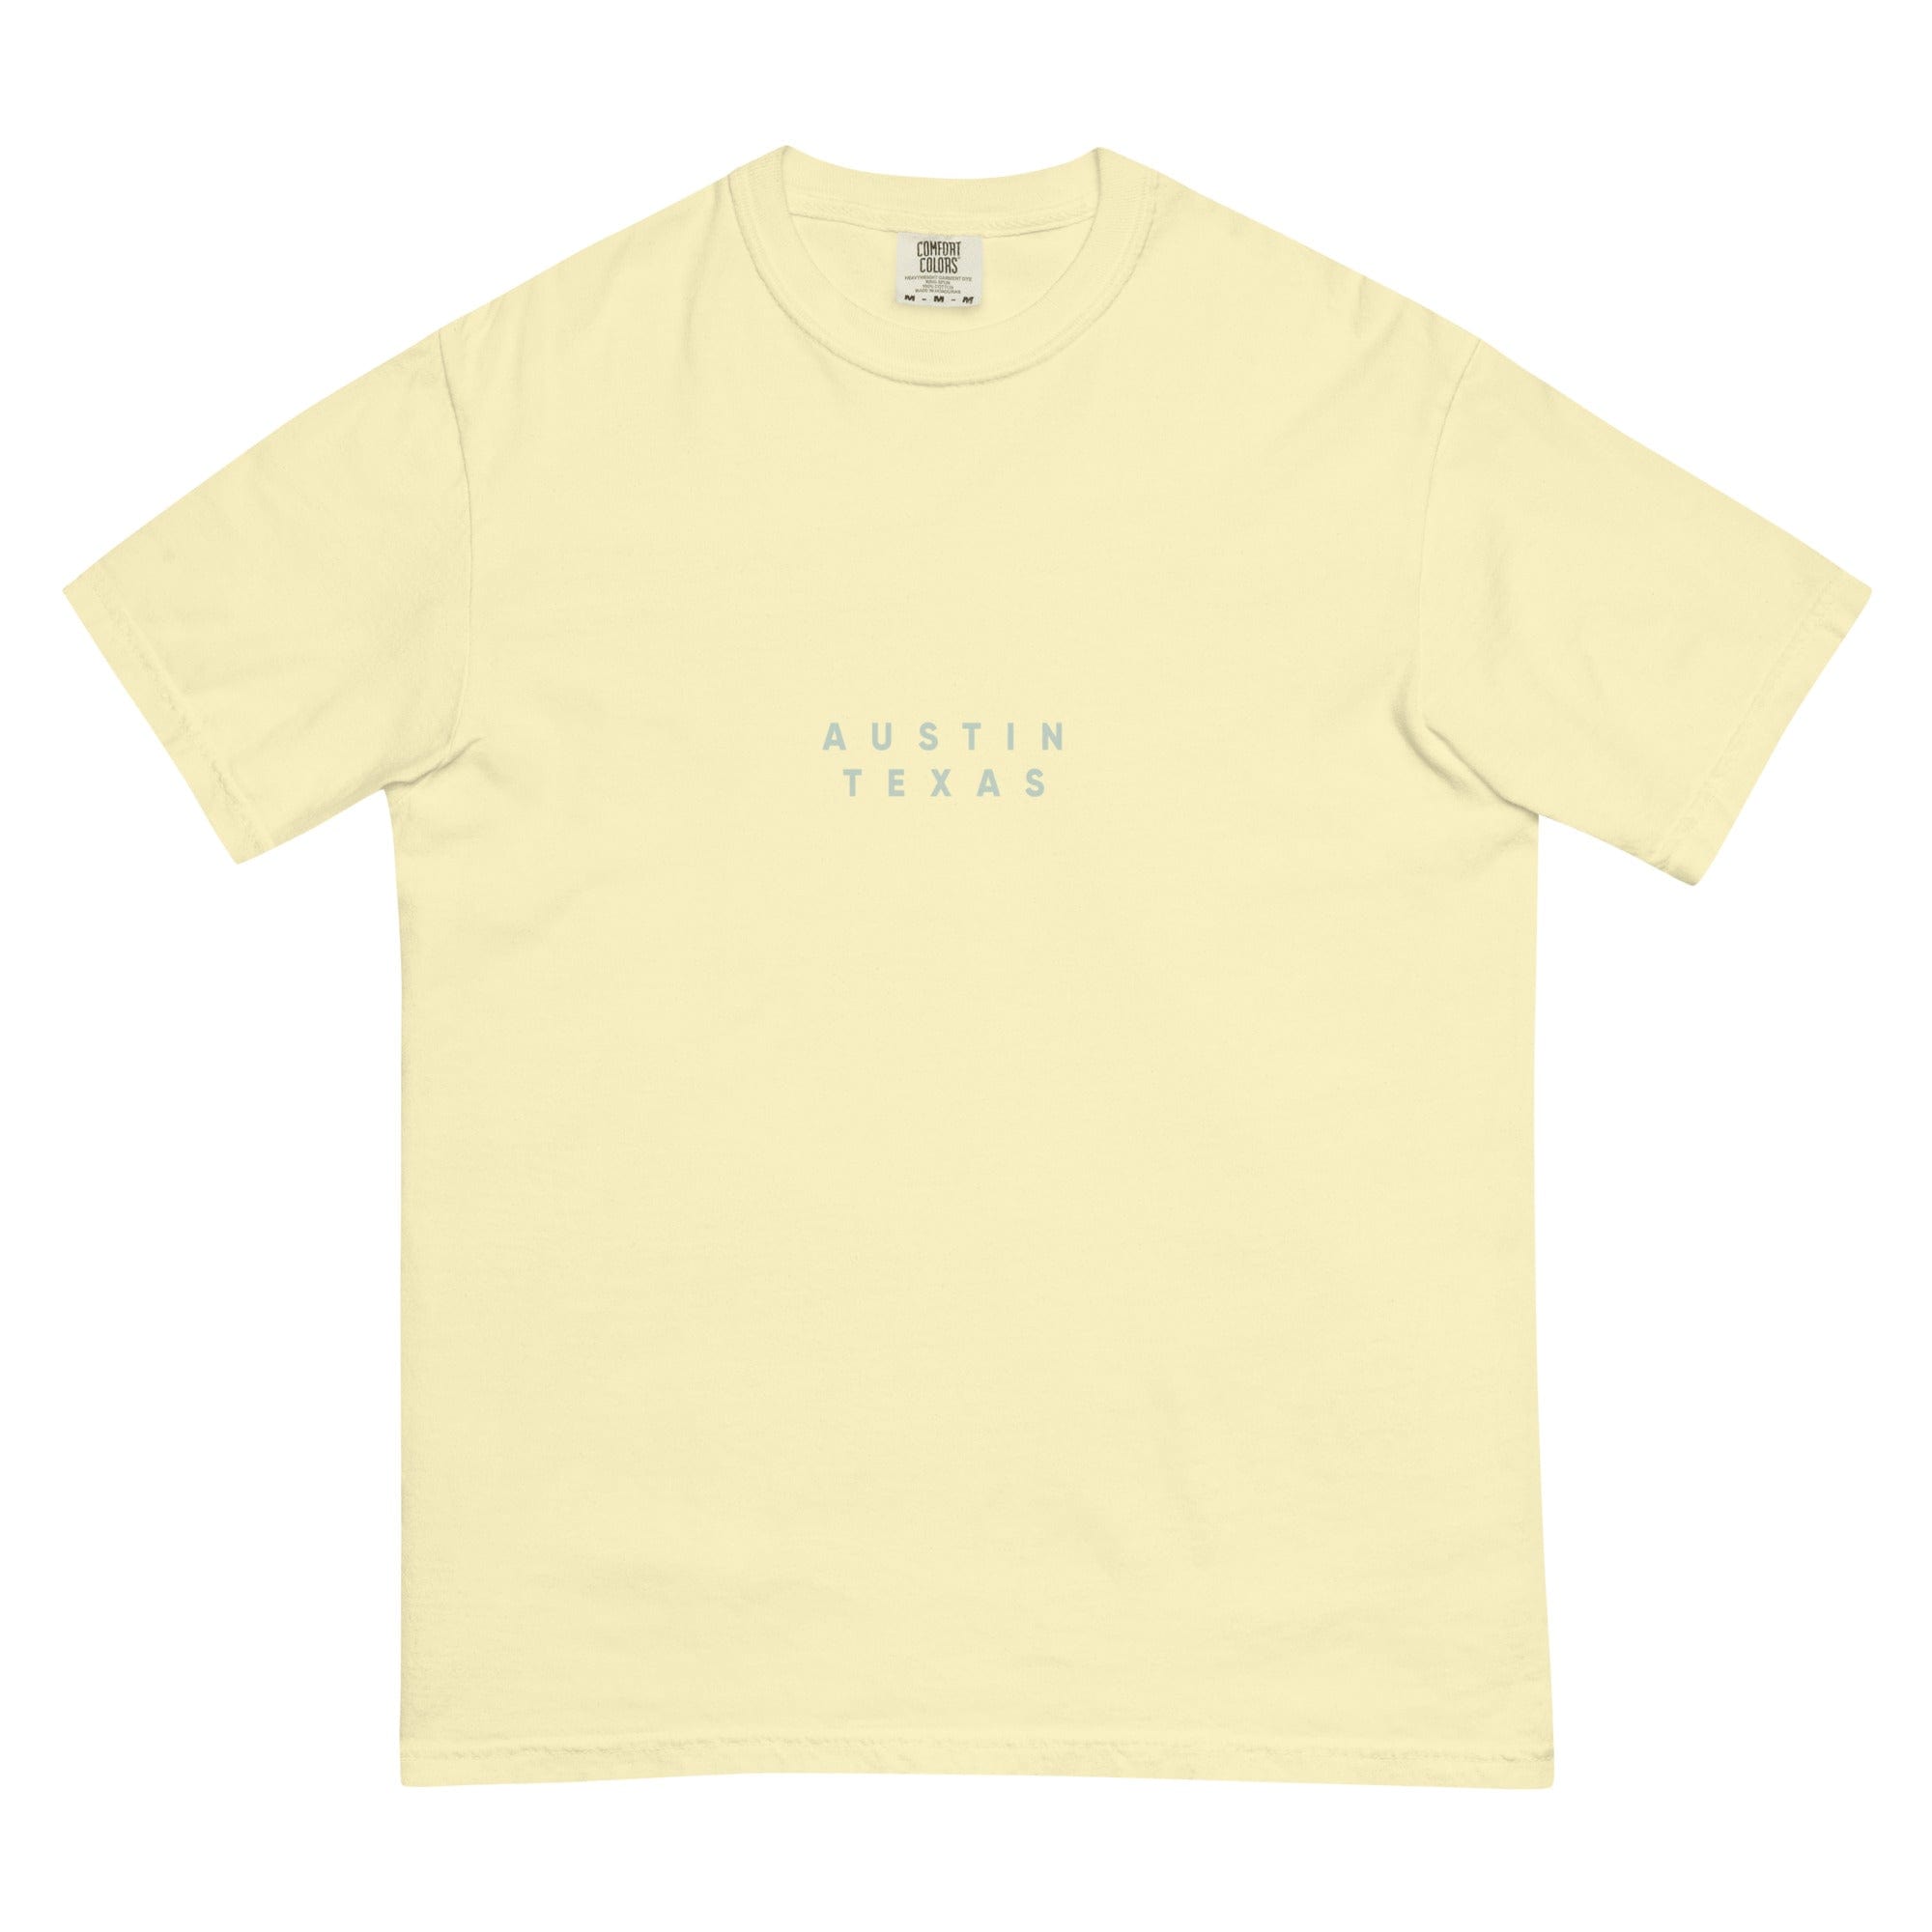 City Shirt Co Austin Comfort Colors T-Shirt Butter / S